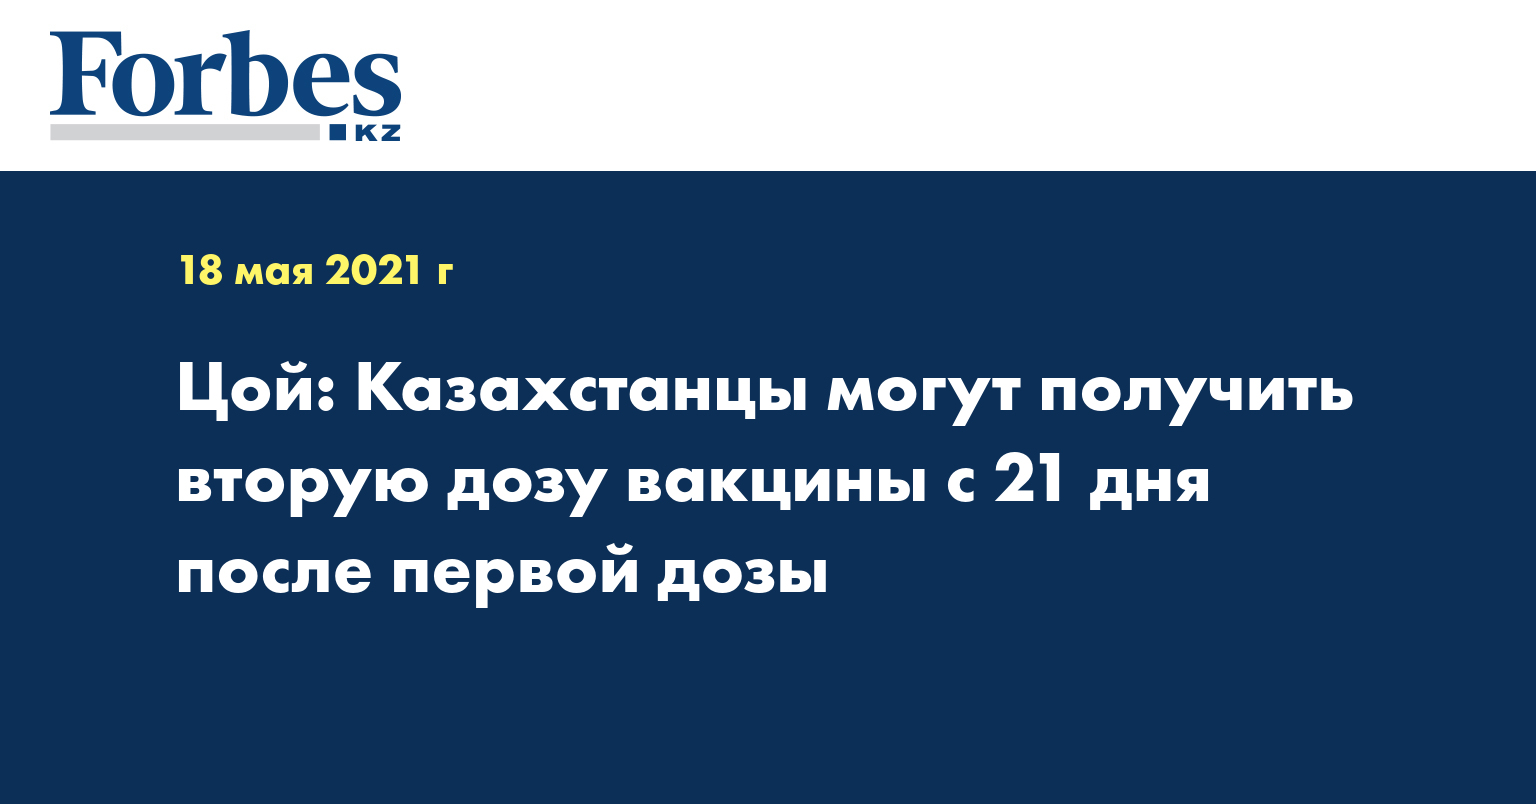 Цой: Казахстанцы могут получить вторую дозу вакцины с 21 дня после первой дозы